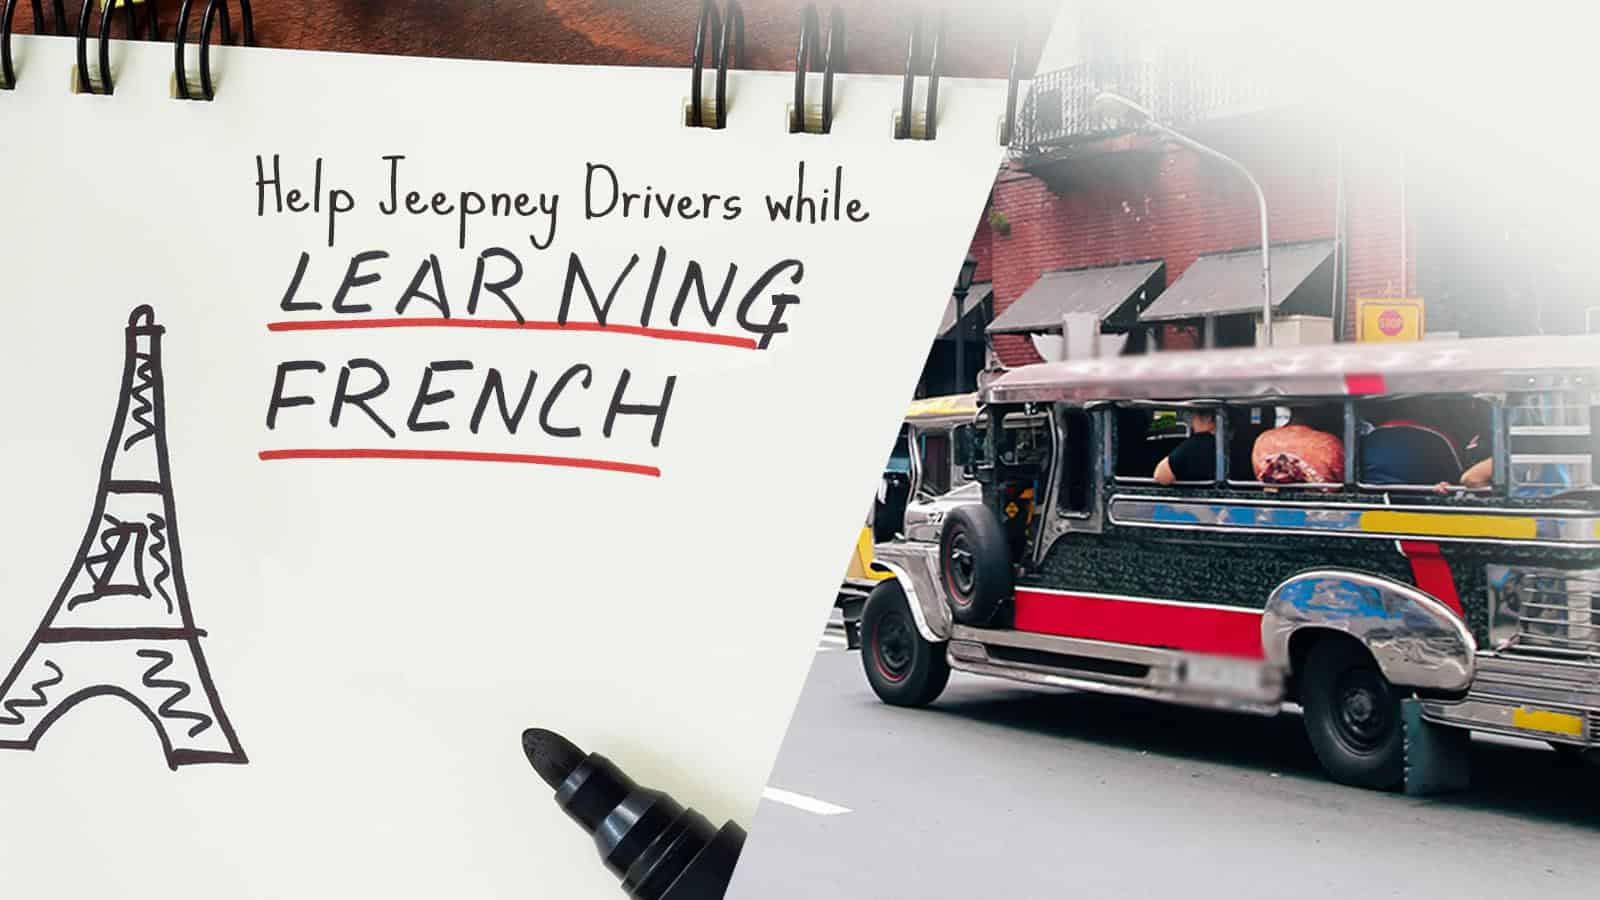 学习法语的同时帮助吉普尼司机!